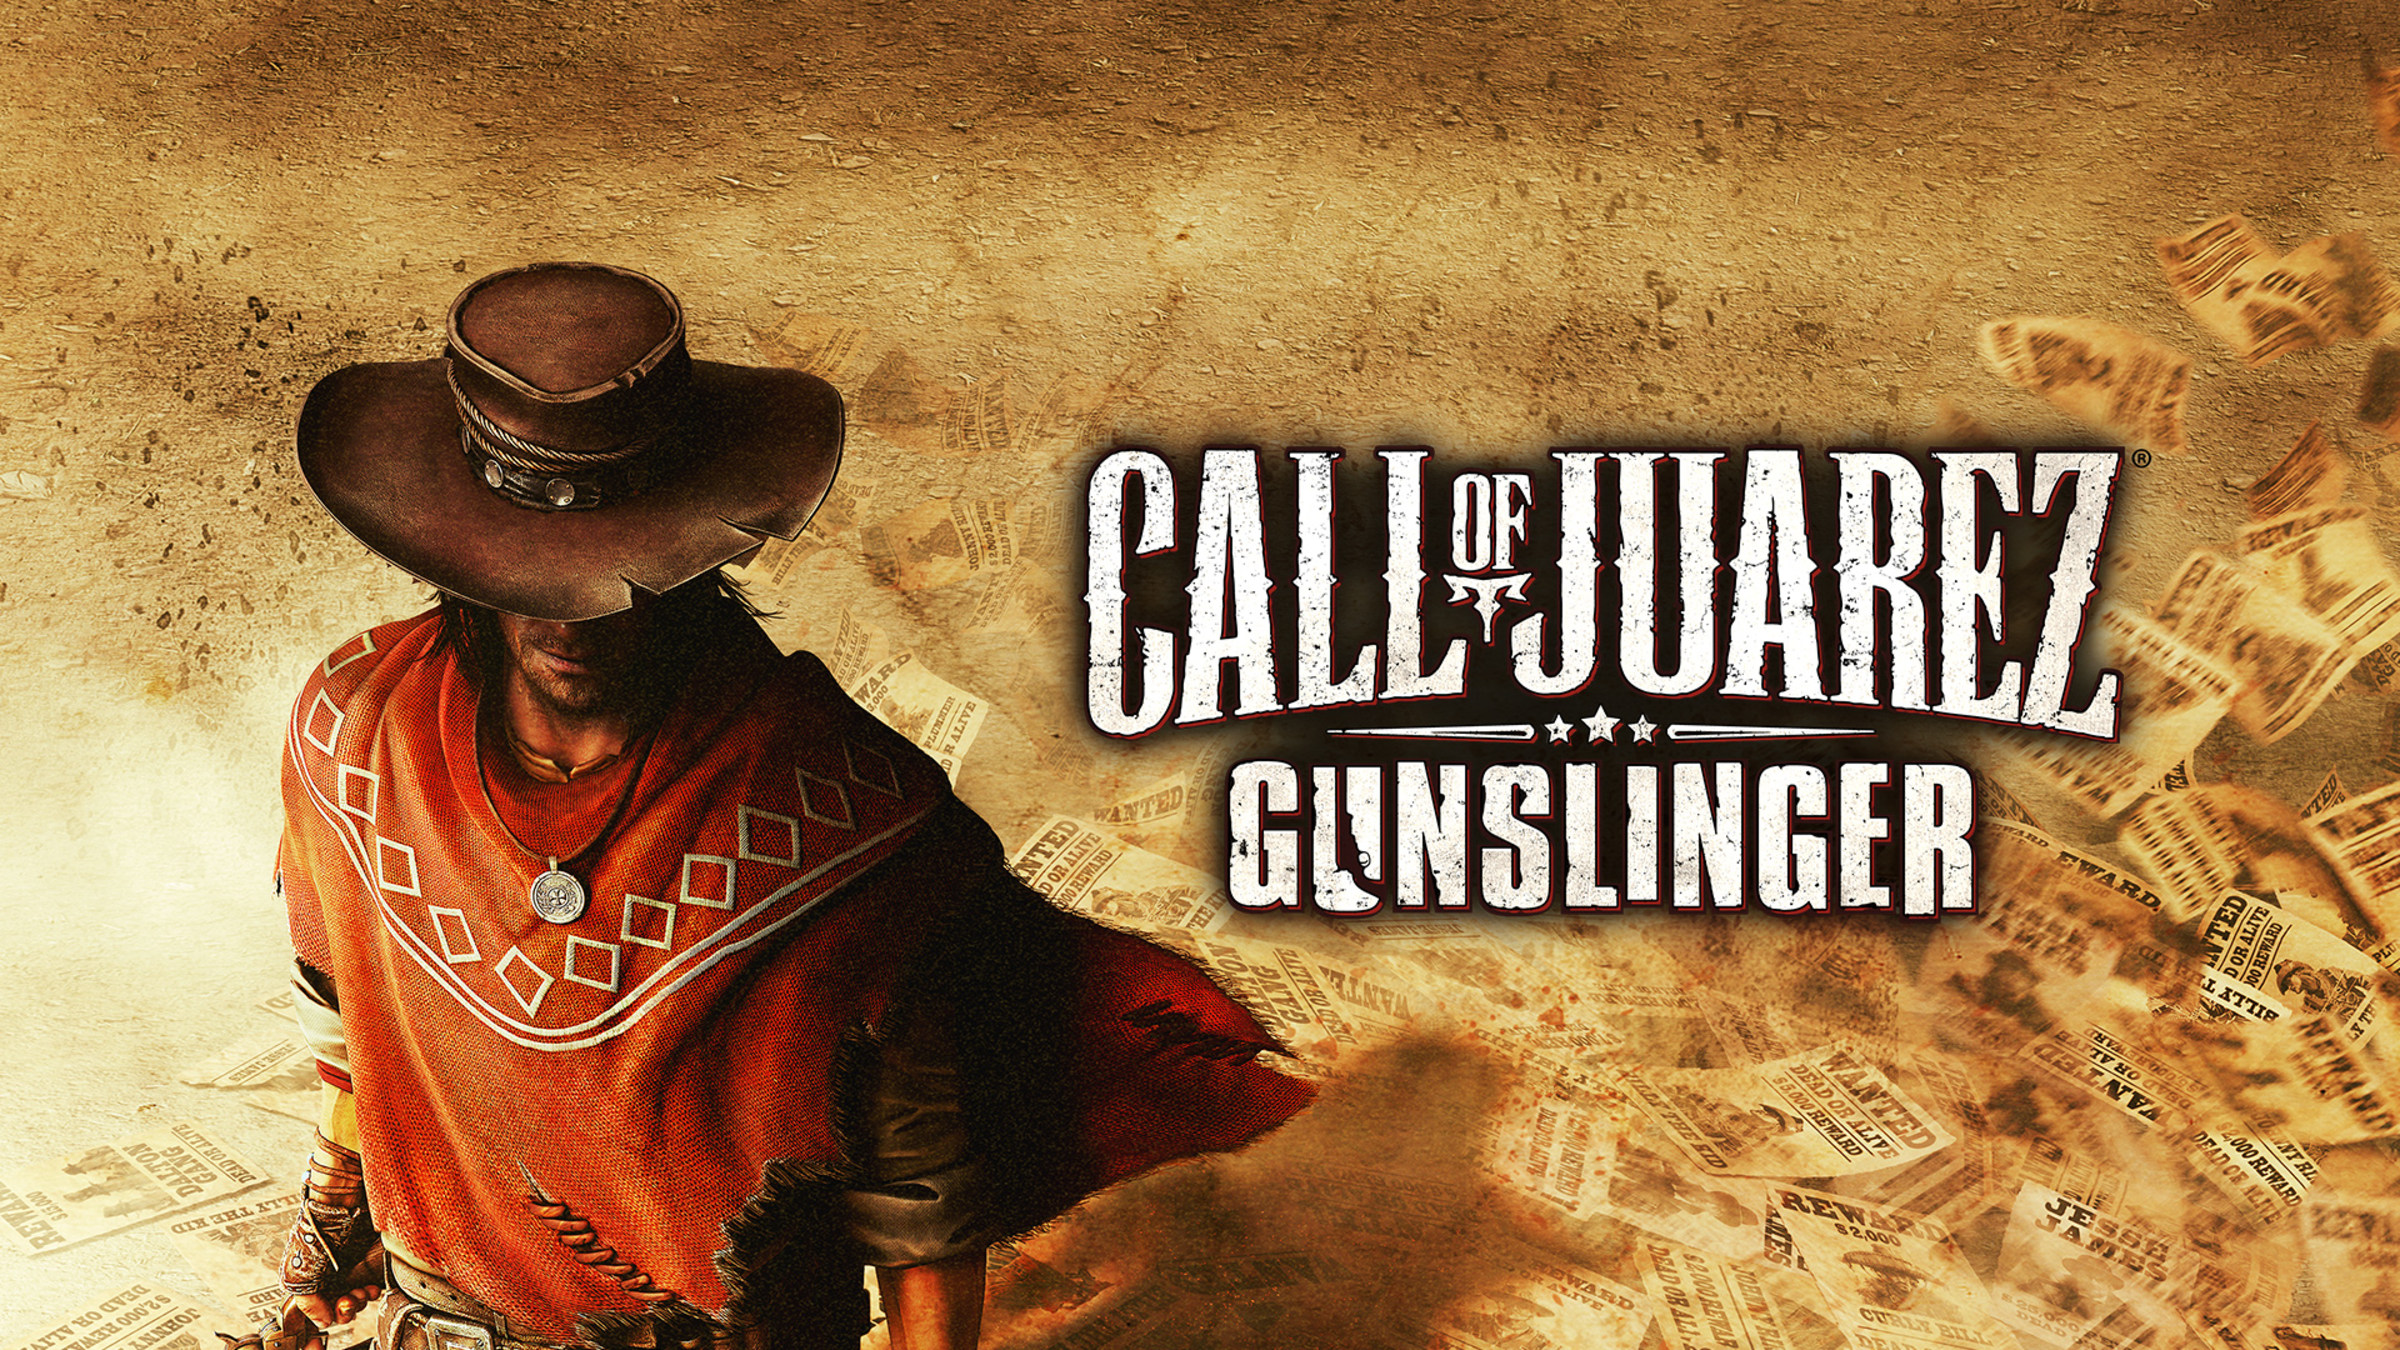 call-of-juarez-gunslinger-ubicaciondepersonas-cdmx-gob-mx